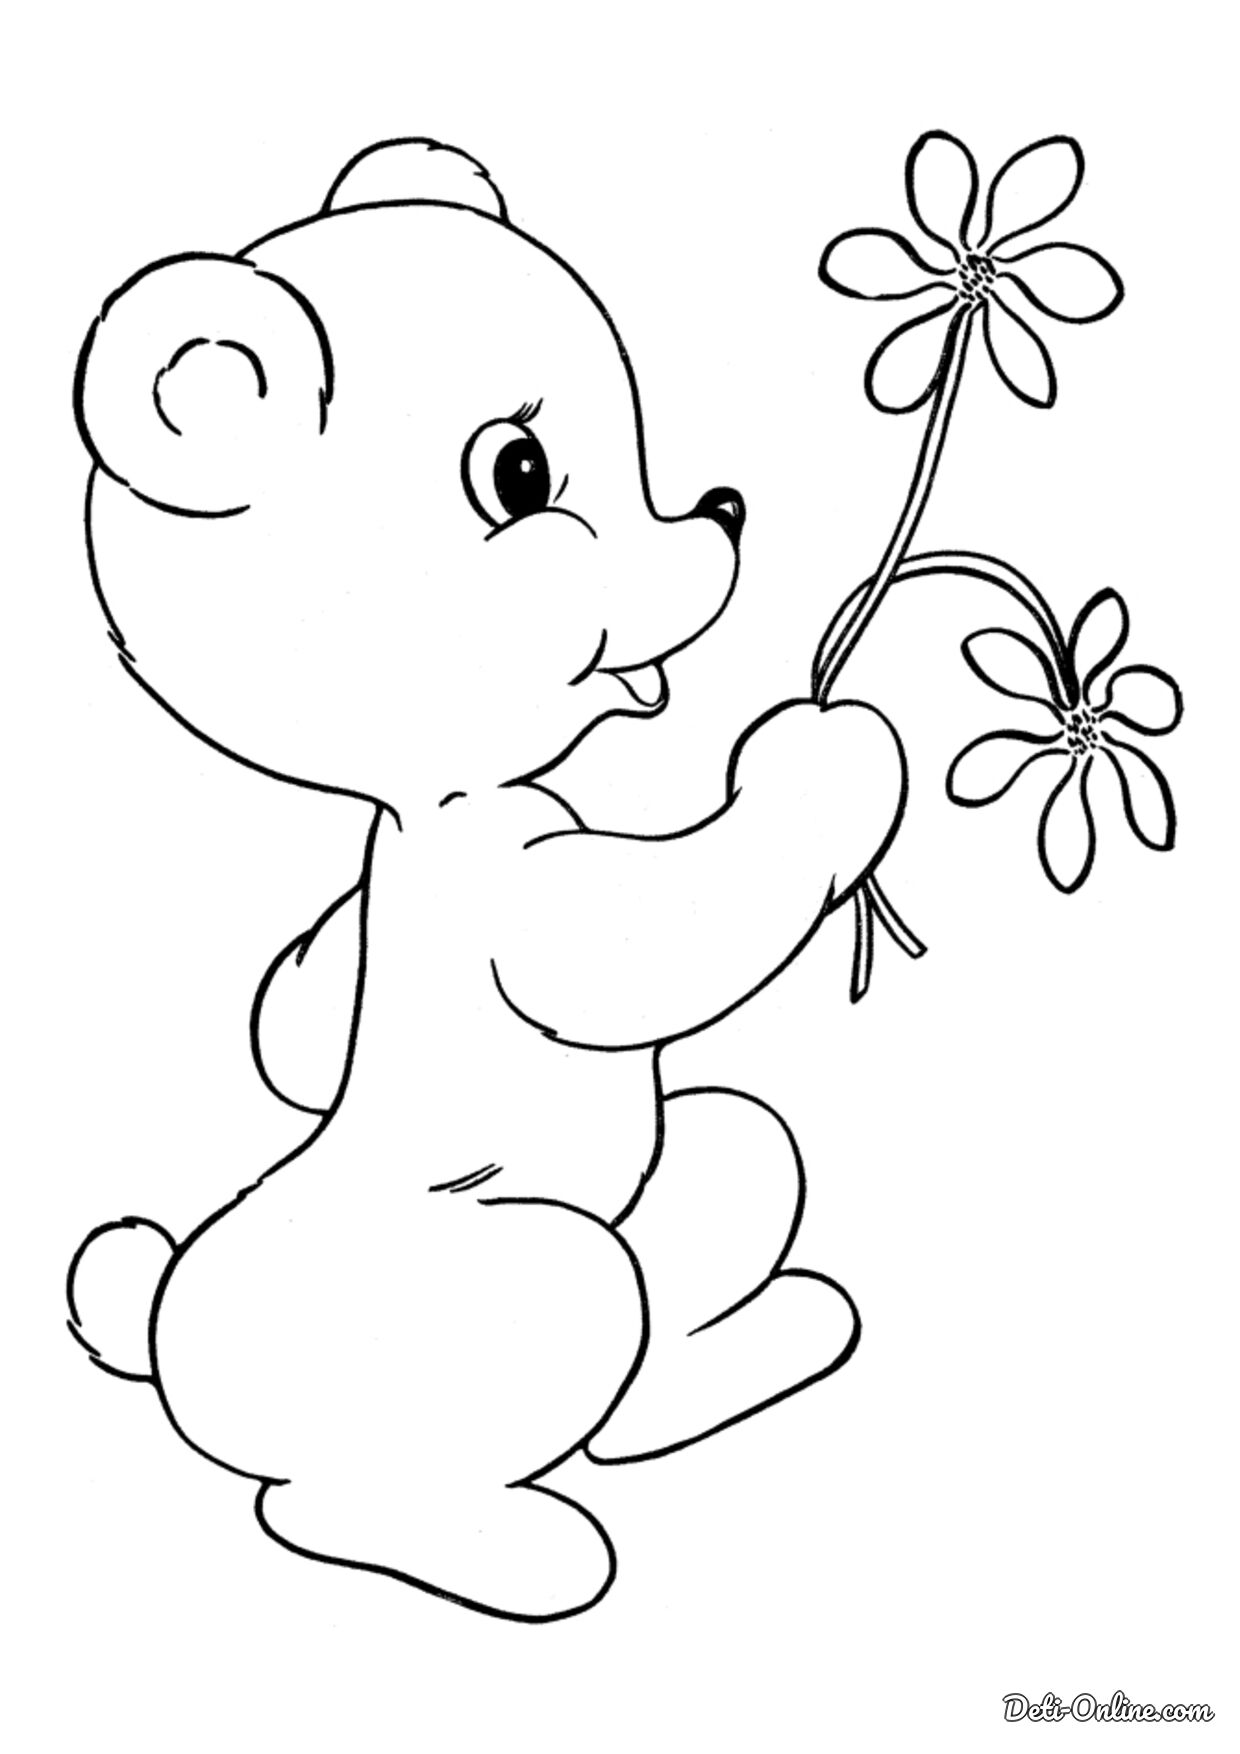 Картинки для детей распечатать. Раскраска. Медвежонок. Раскраска "мишки". Медвежонок раскраска для детей. Мишка раскраска для малышей.